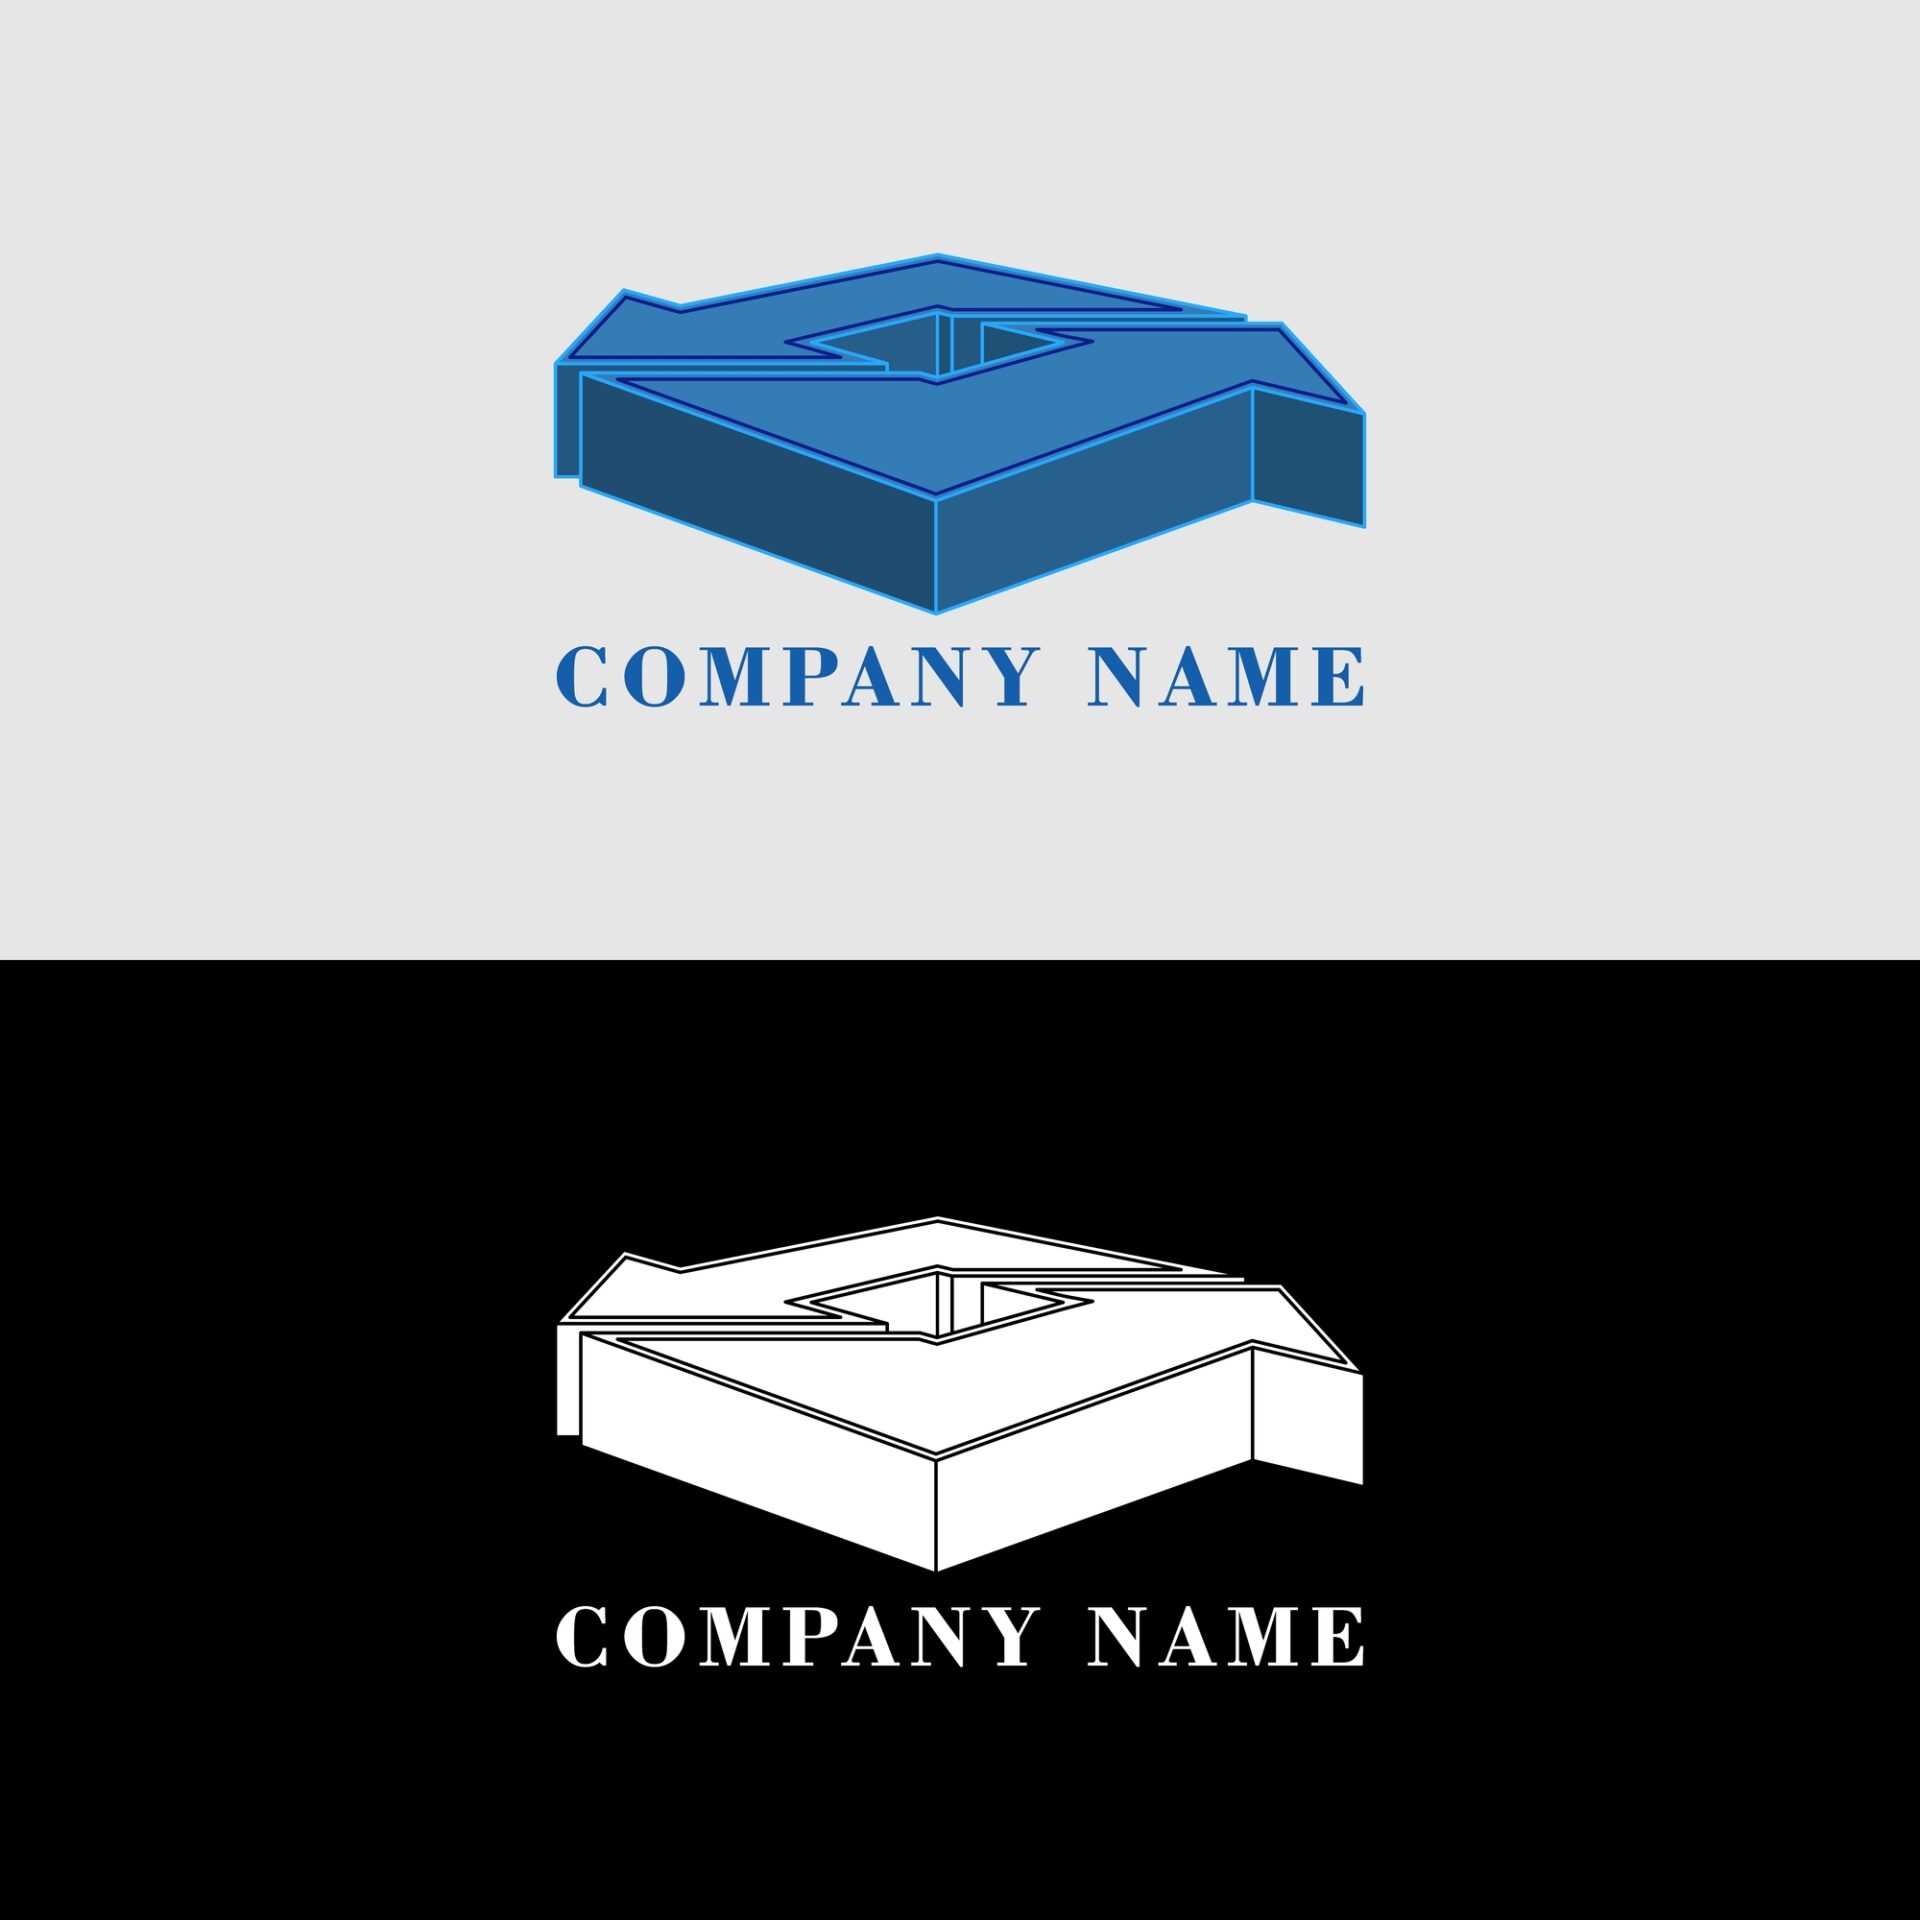 コーポレートアイデンティティのイメージが異なる企業ロゴのイメージ